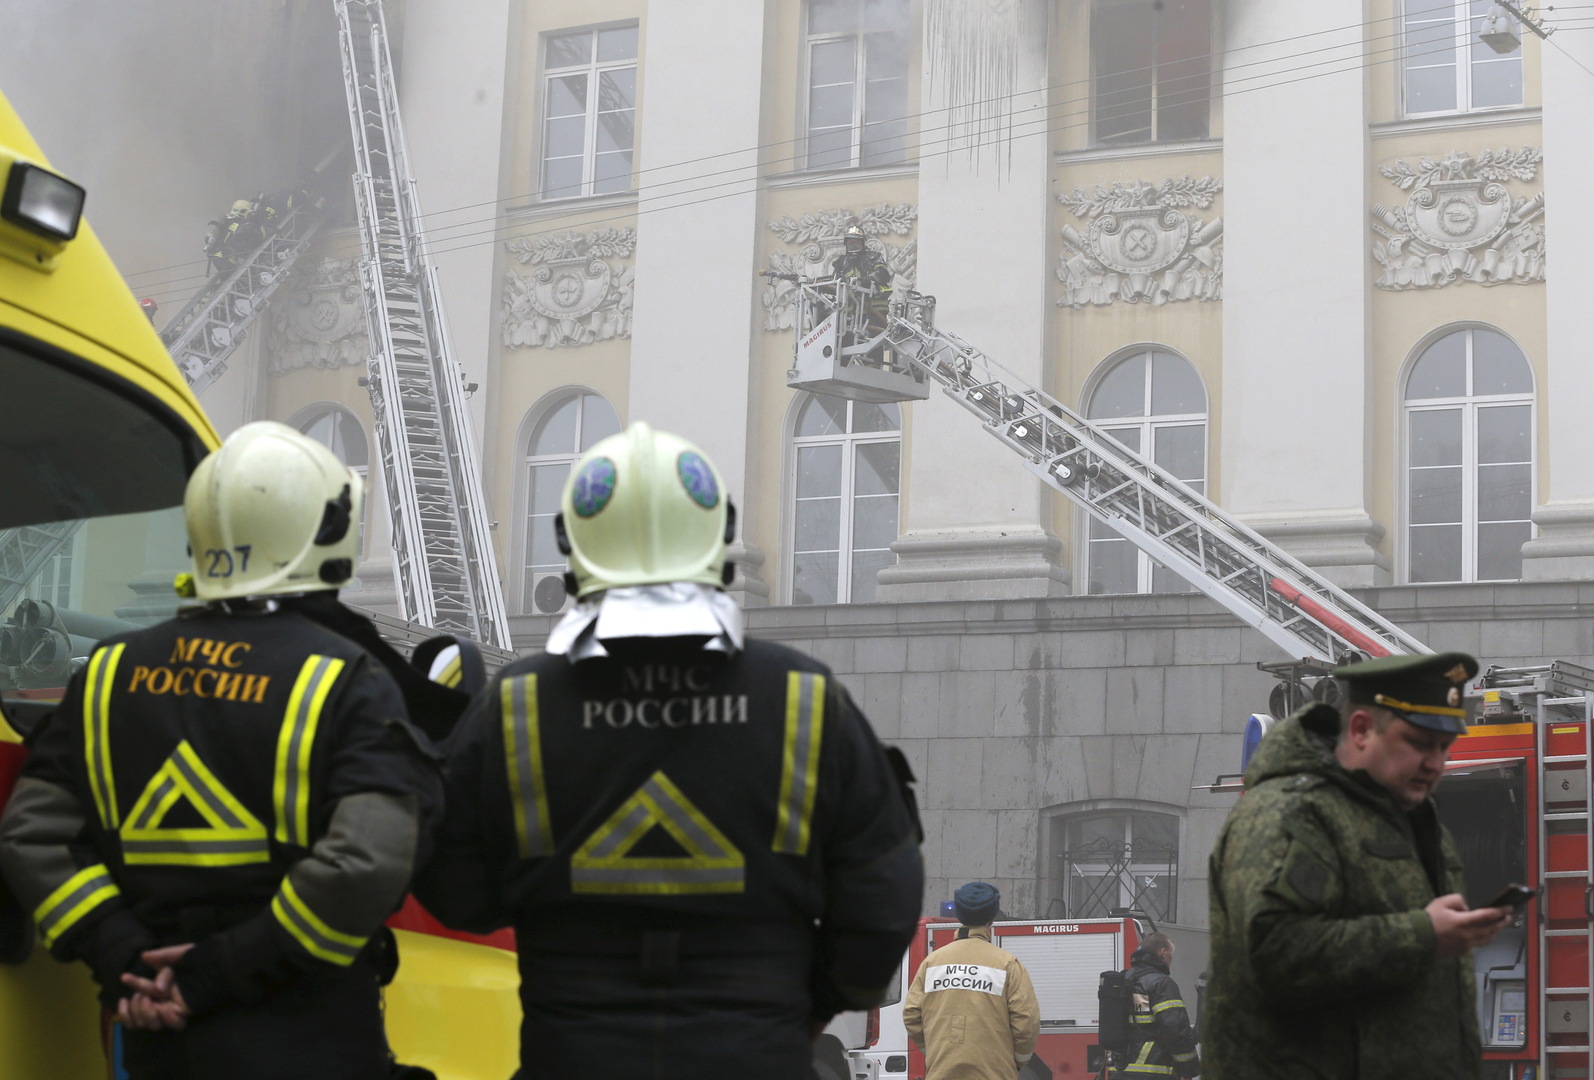 مصرع 3 أشخاص بحريق فندق في موسكو